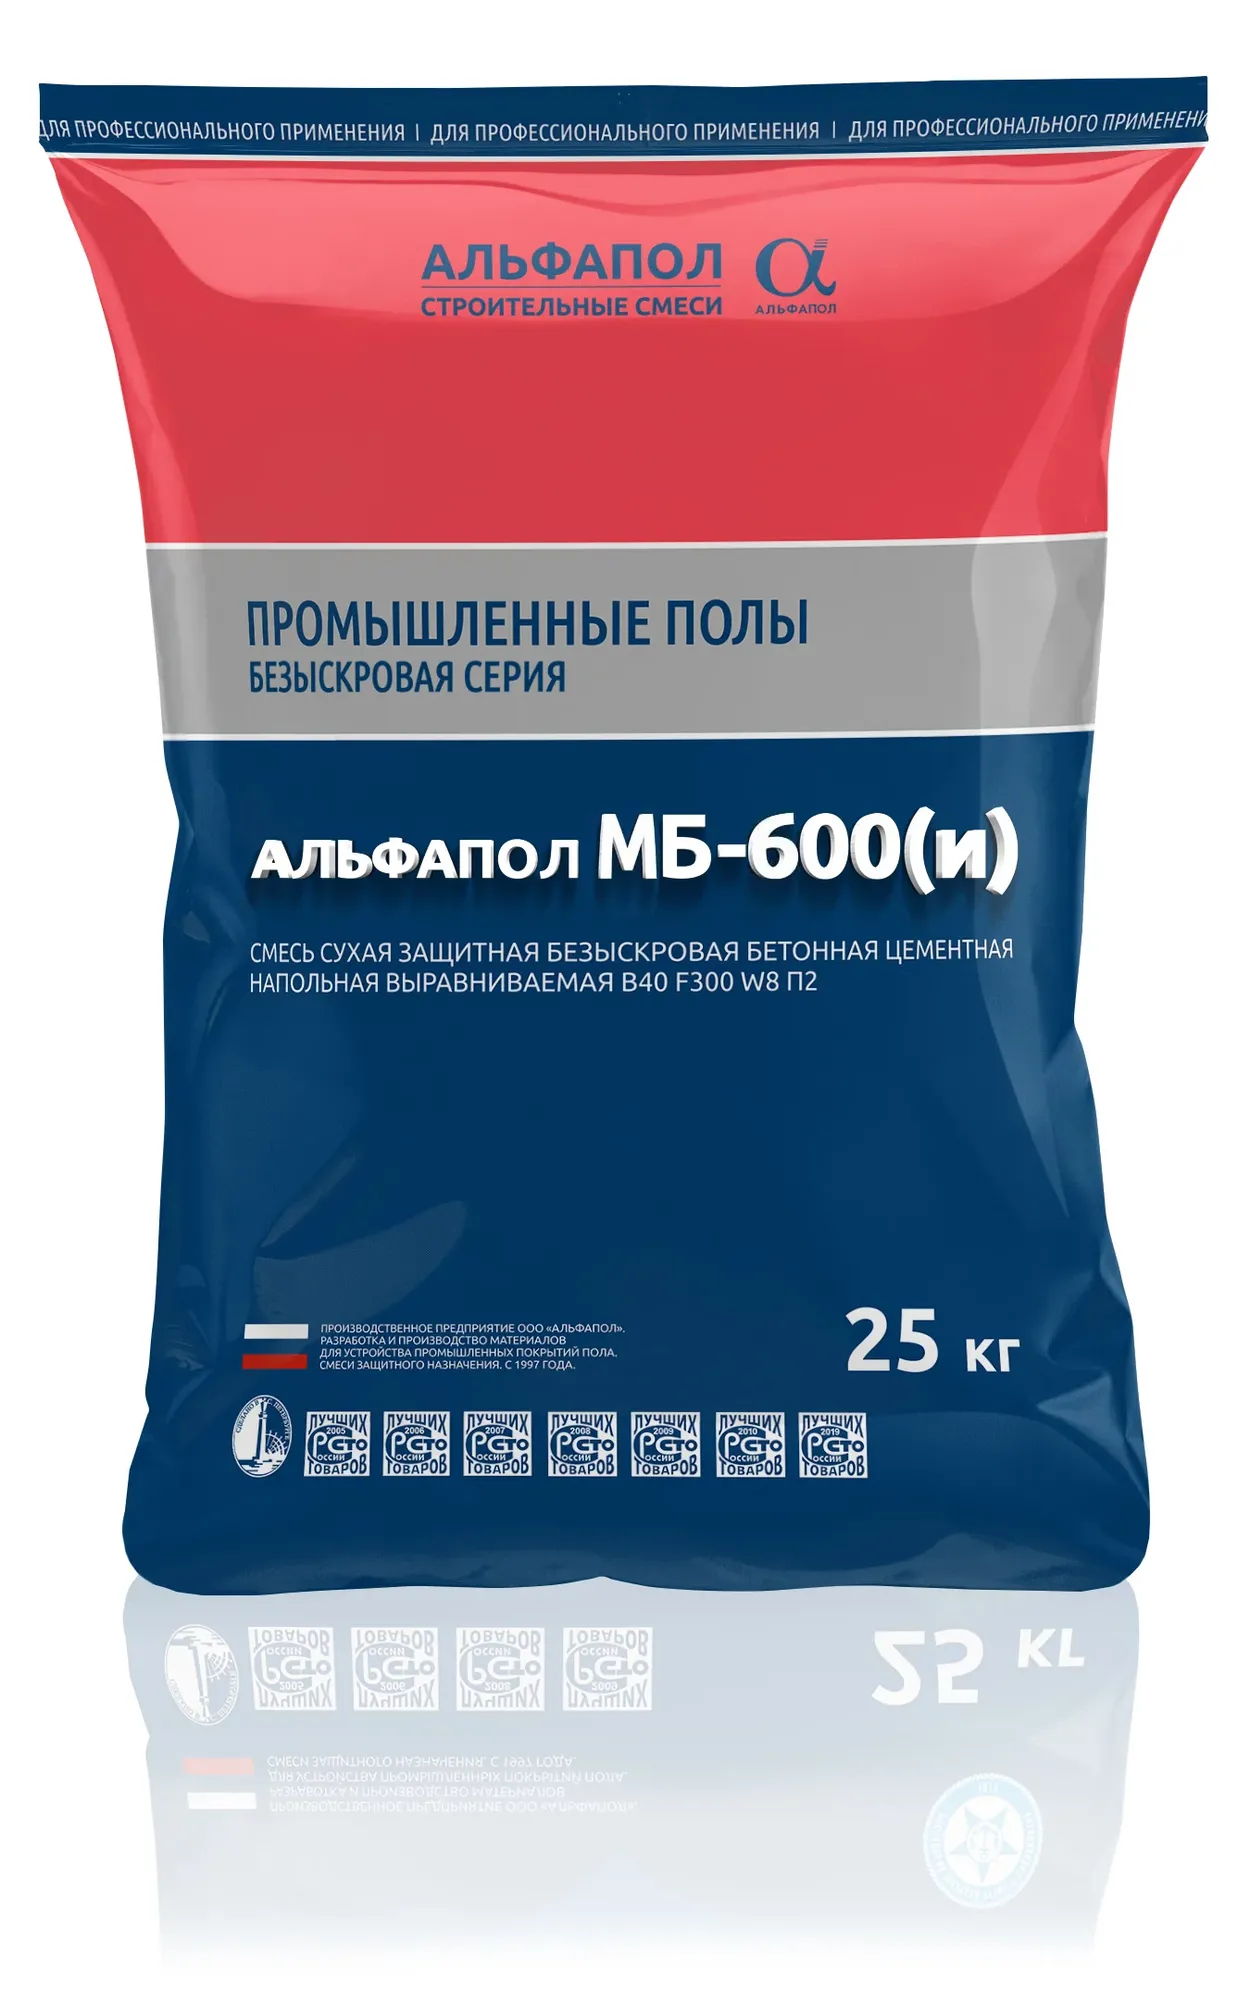 АЛЬФАПОЛ МБ-600(и) безыскровый безусадочный маслобензостойкий износостойкий промышленный бетонный пол В35 П3-П4